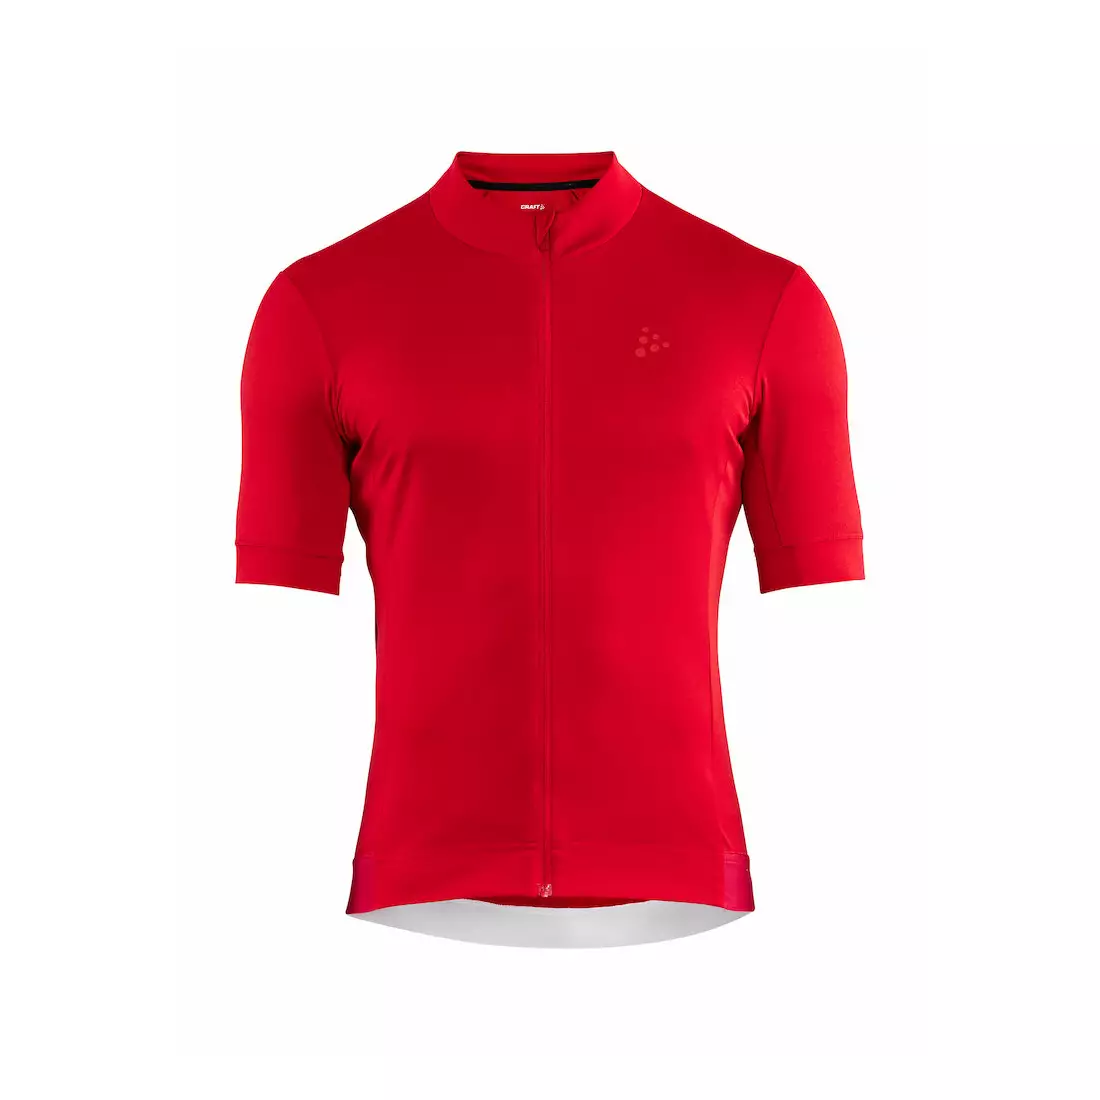 CRAFT ESSENCE pánský cyklistický dres červený 1907156-430000